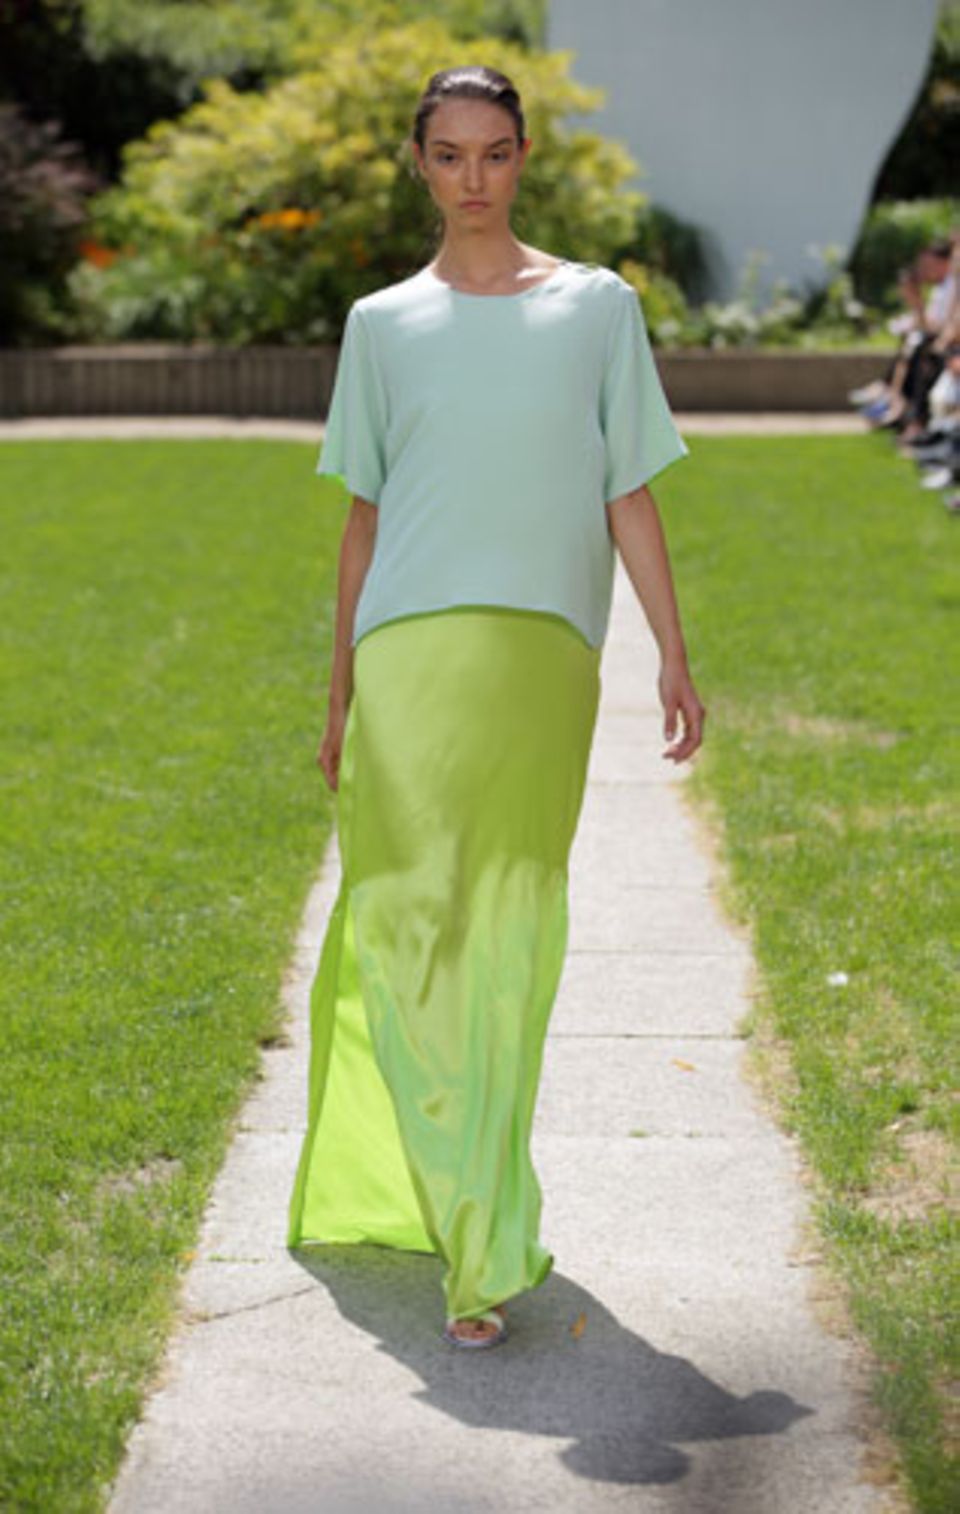 Das Label Perret Schaad mischt verschiedene Grüntöne in seiner Sommerkollektion 2015. Zum Beispiel hier leuchtendes Hellgrün.